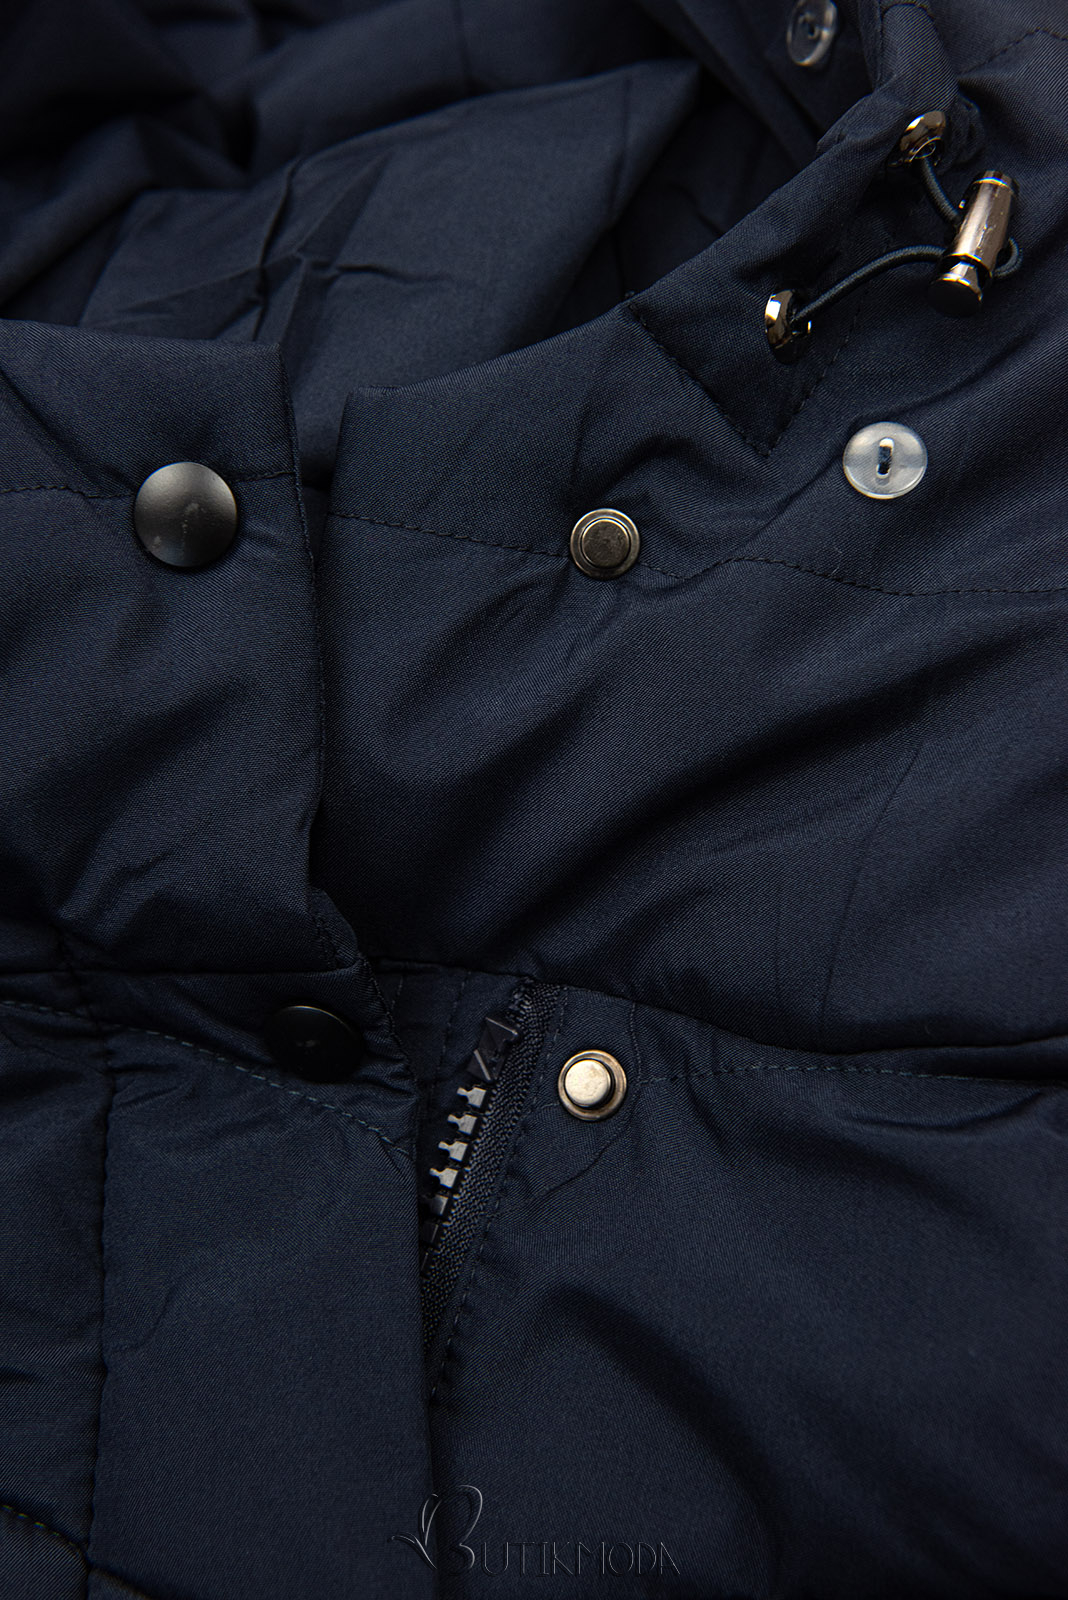 Szélesebb csípőre tervezett sötétkék színű téli kabát